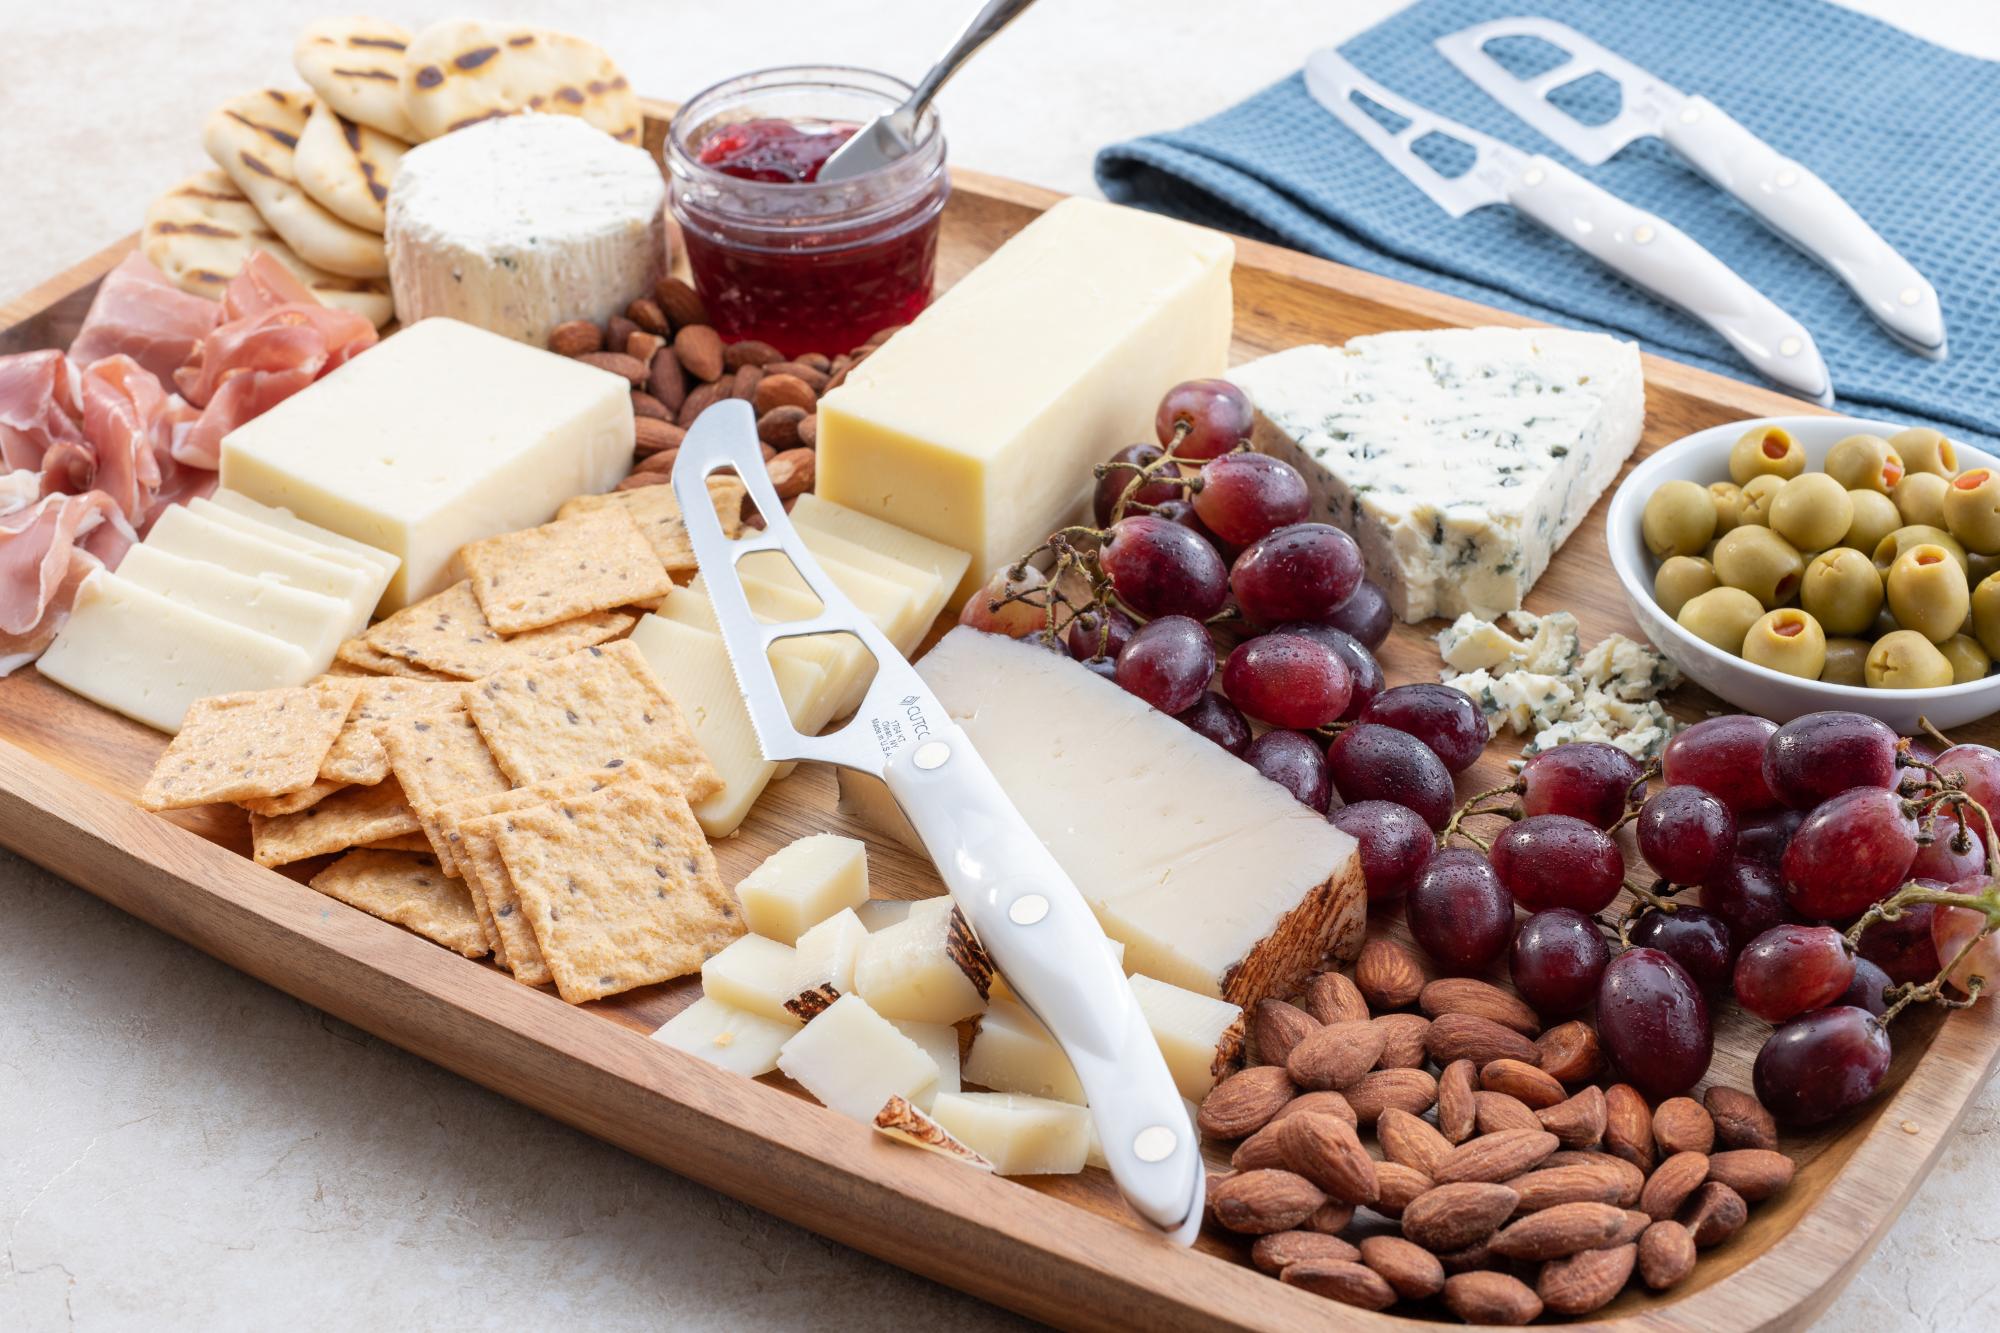 An arranged cheese board.